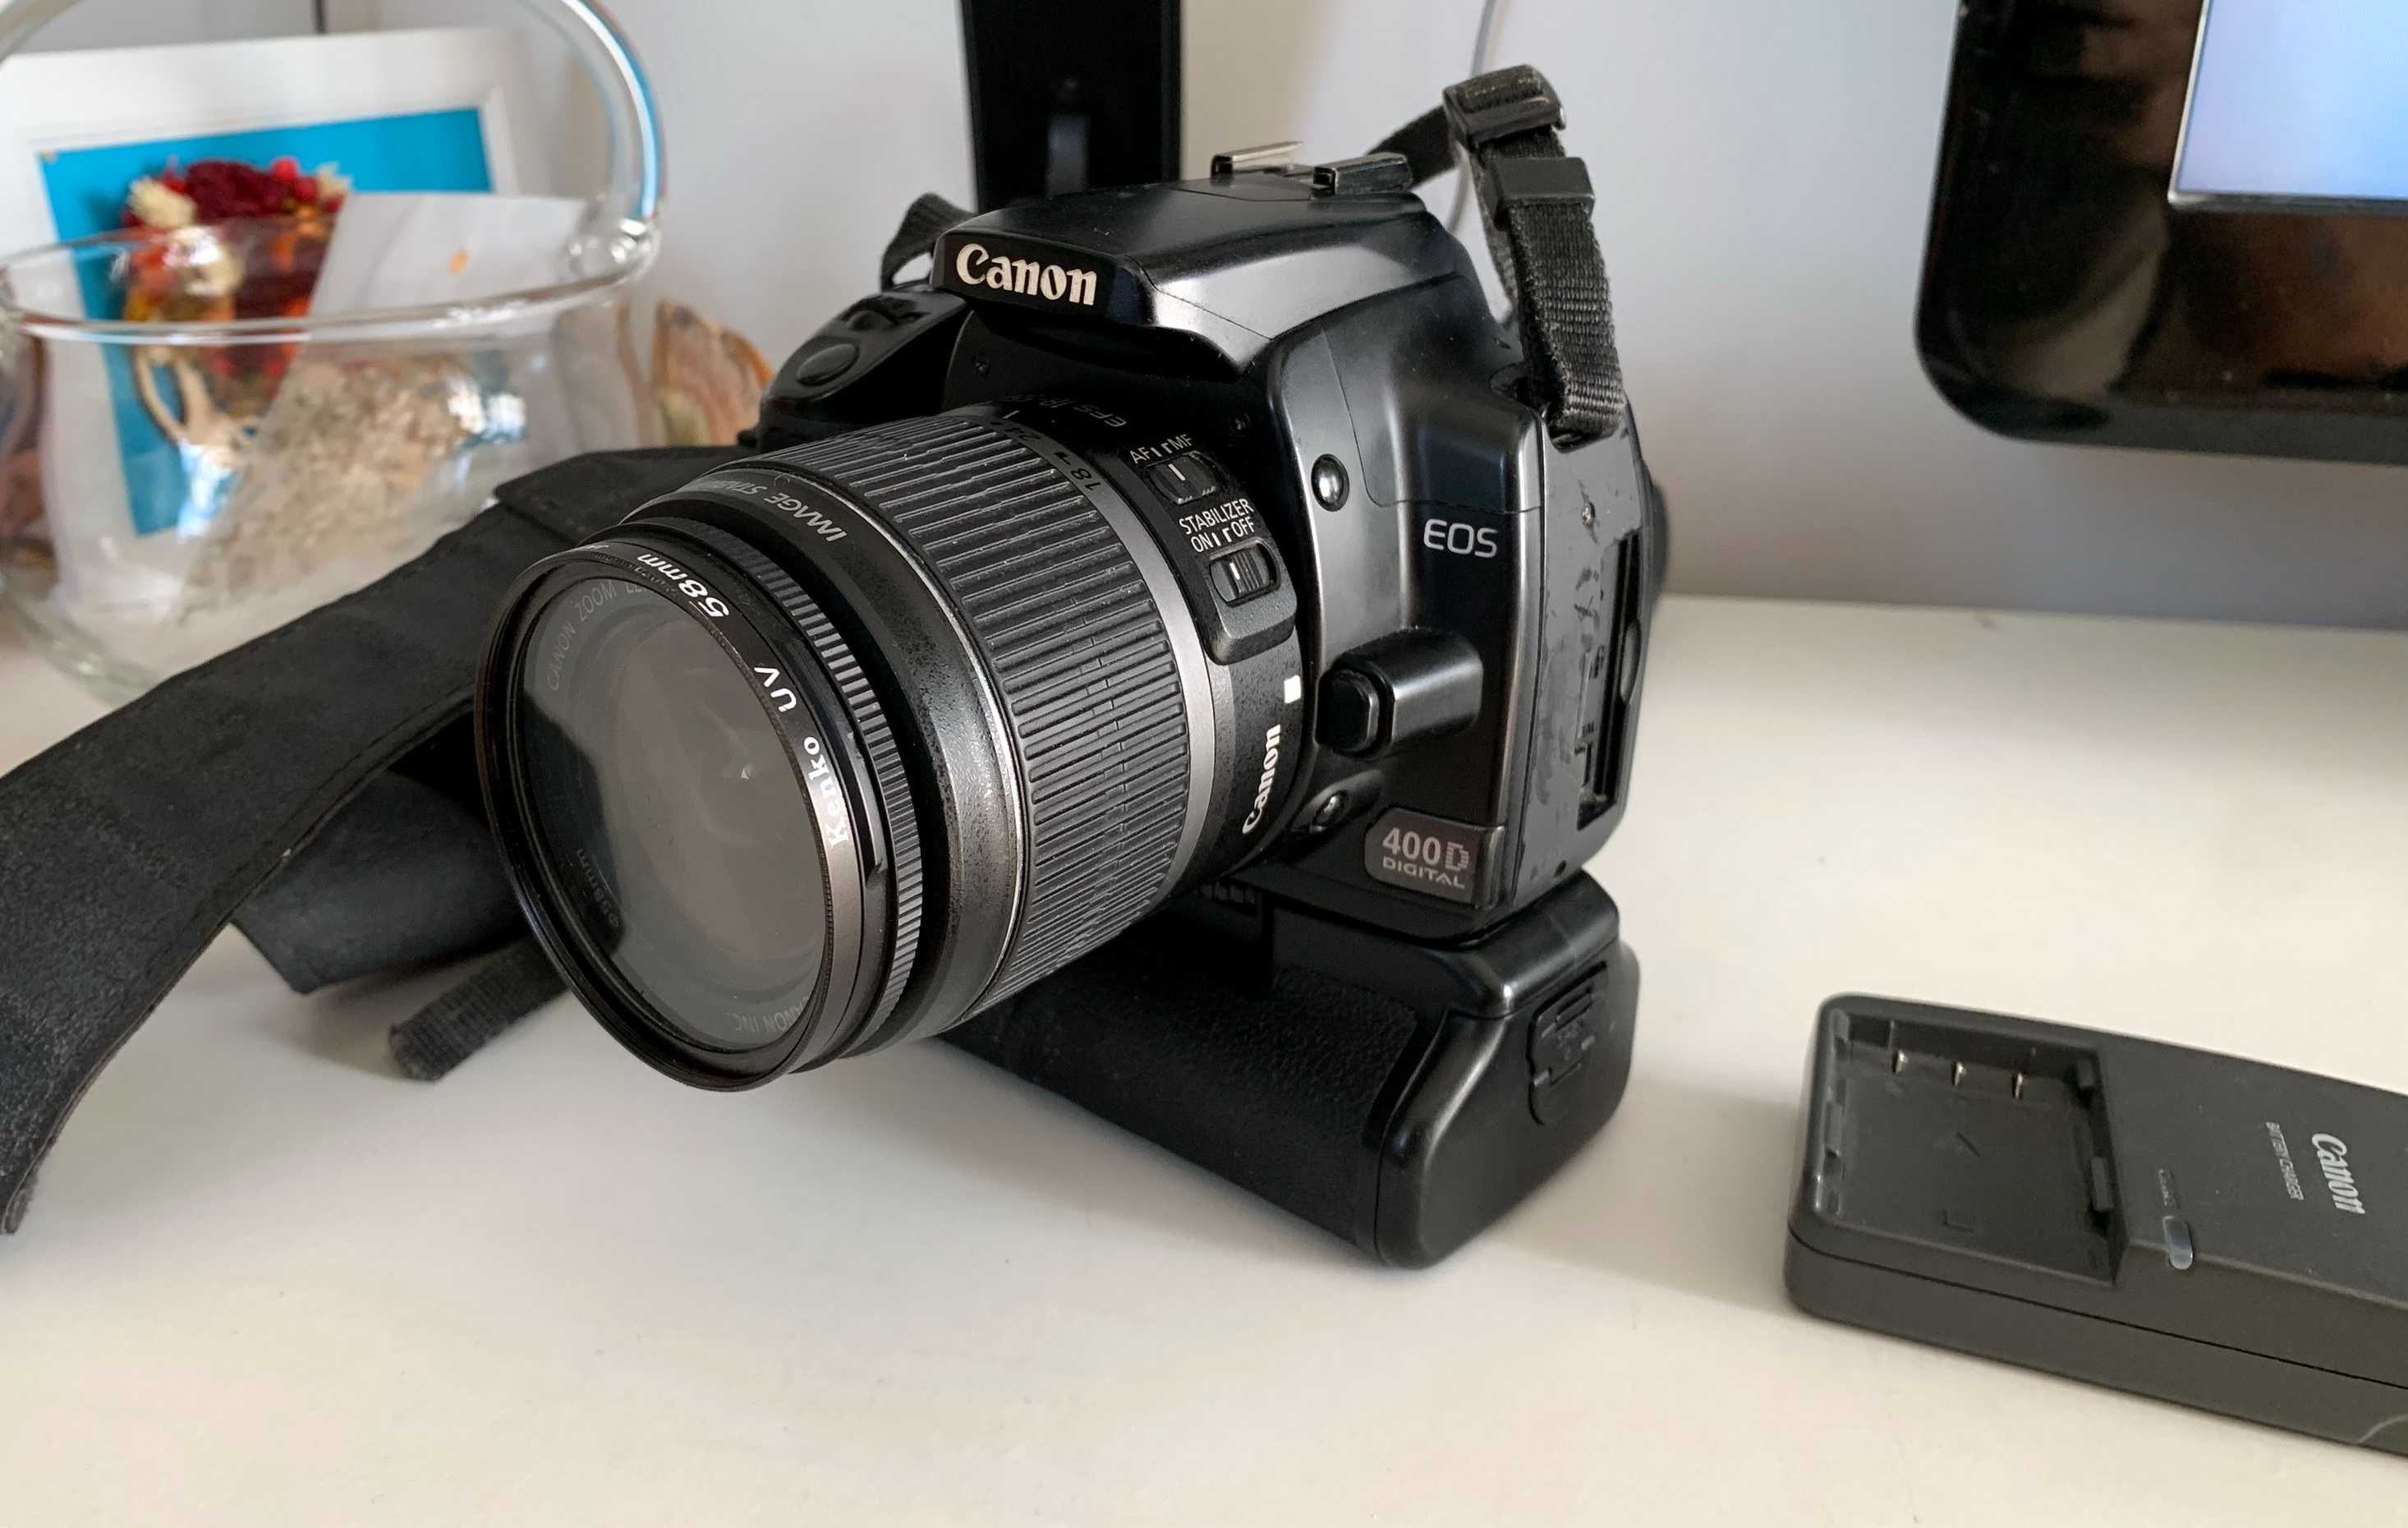 DSLR Canon EOS 400D + Grip 2 acum + filtru+inc cu eroare fara obiectiv